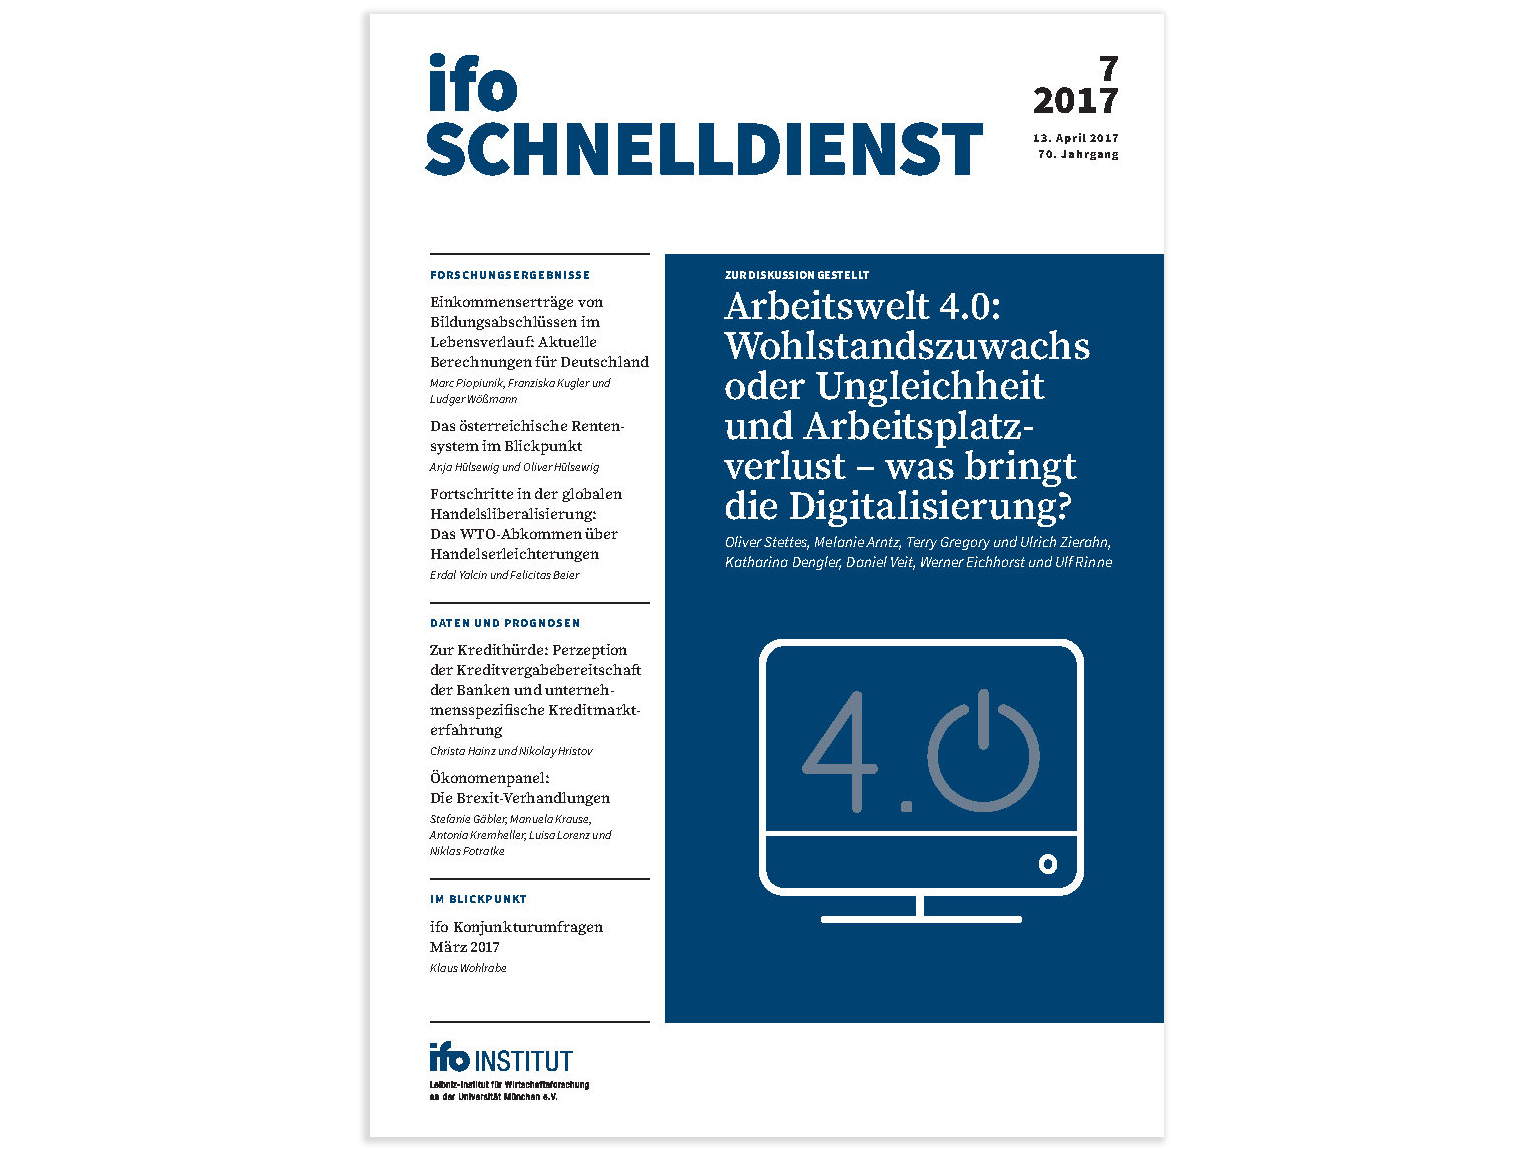 ifo Schnelldienst Cover 2017